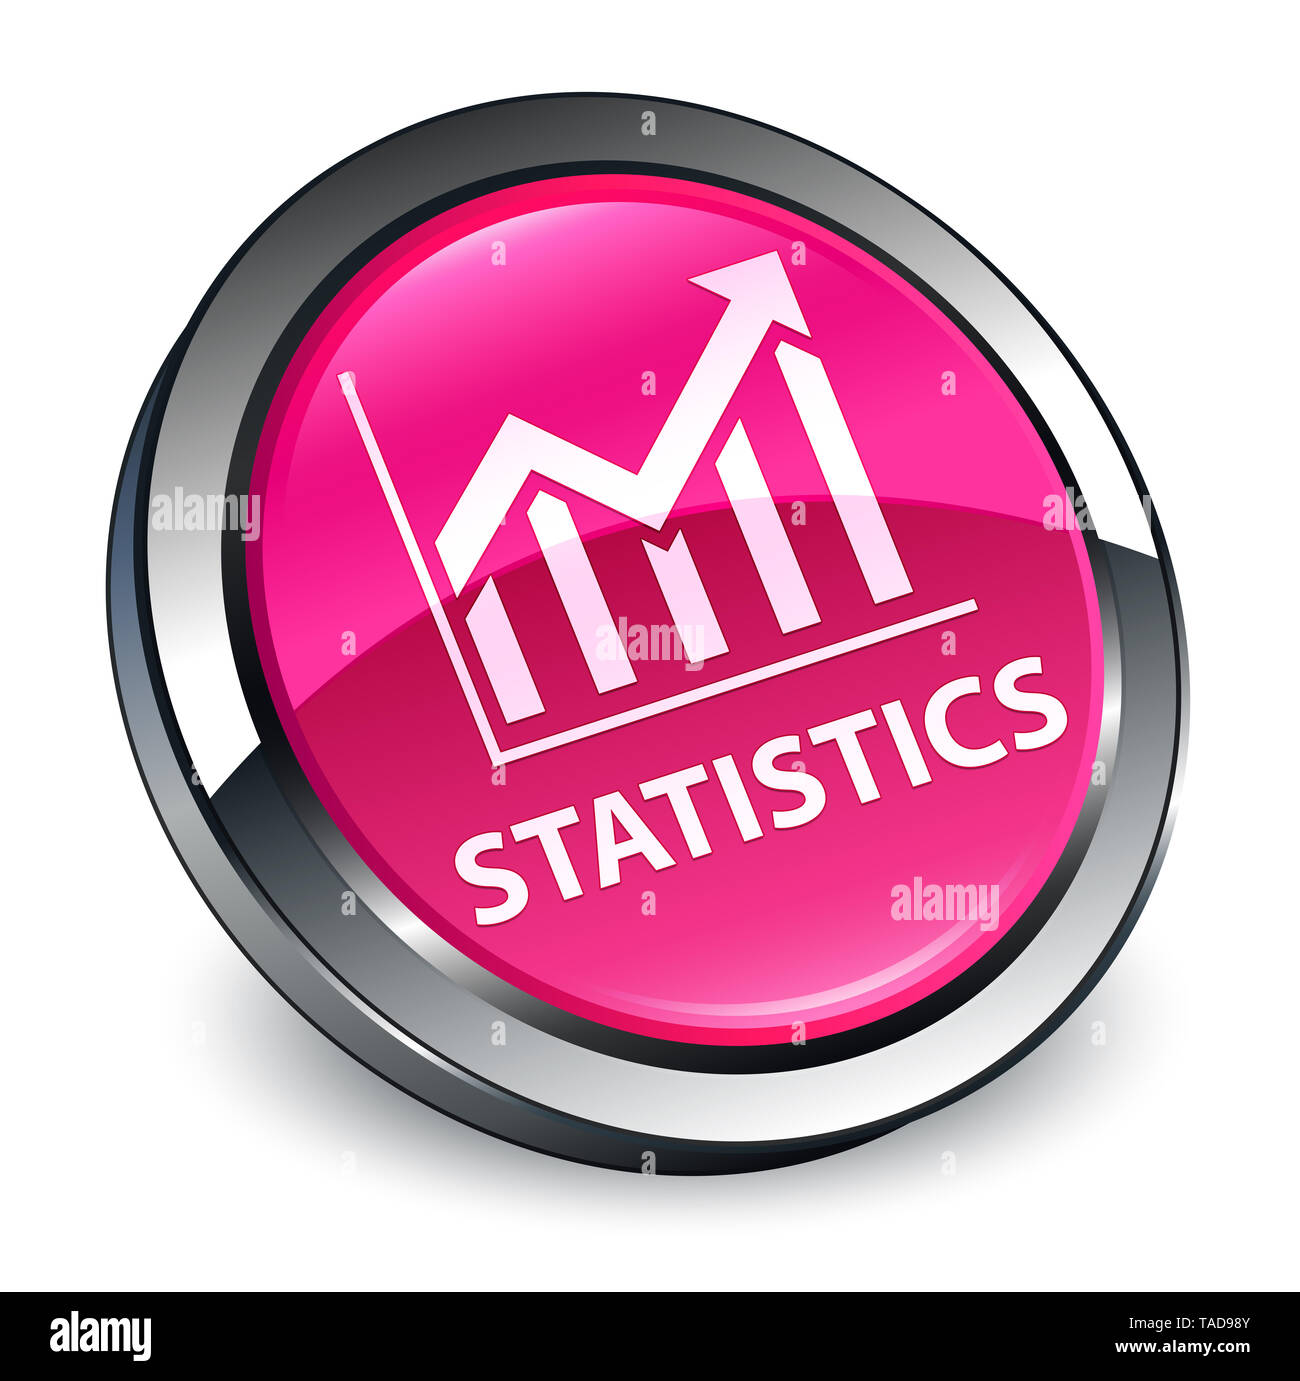 Statistiche isolati su 3d rosa pulsante rotondo illustrazione astratta Foto Stock